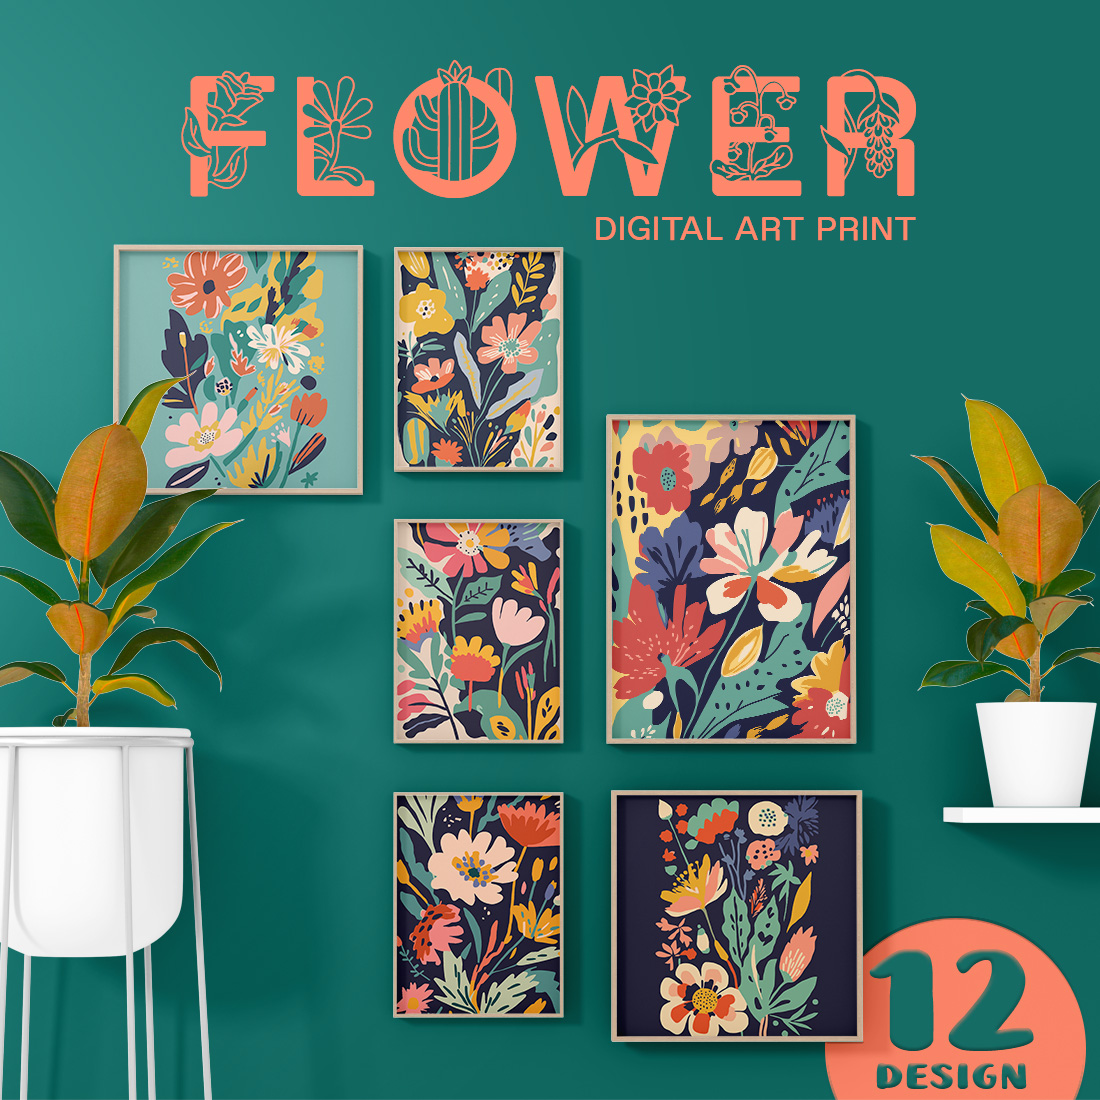 Floral Flower Illustration Design cover image.